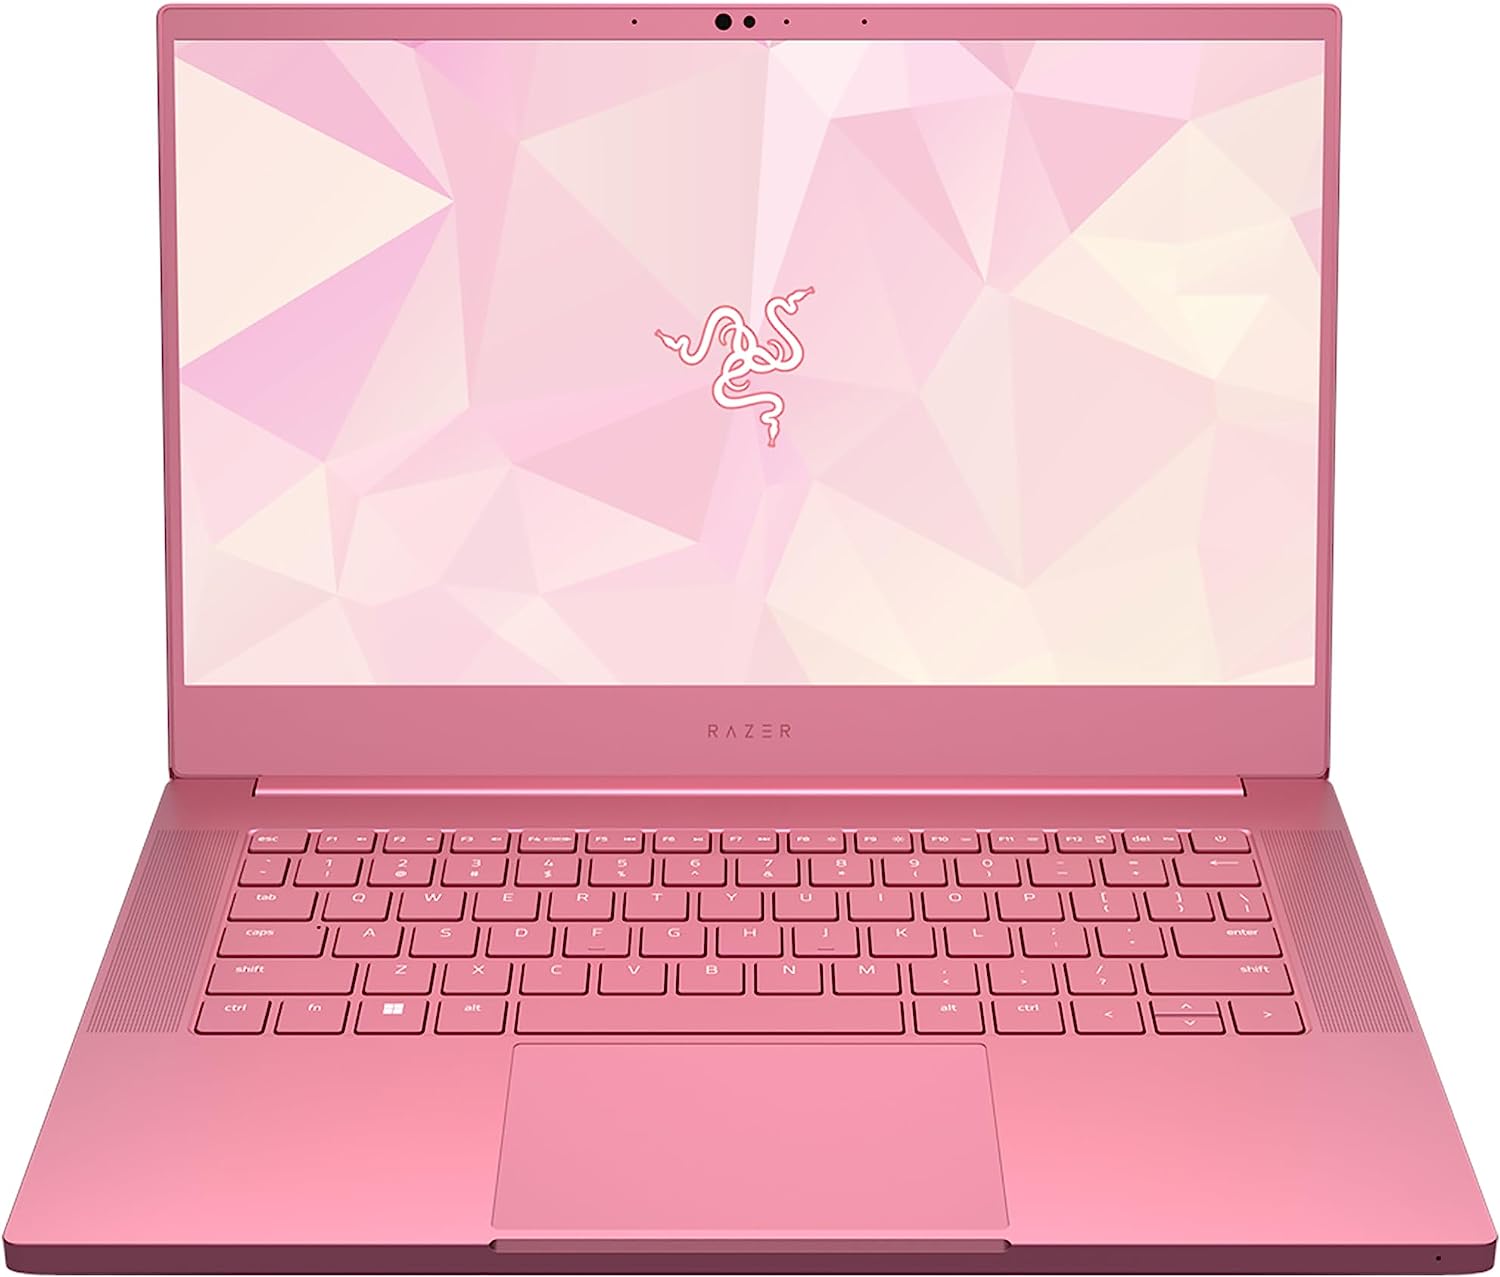 Razer Pink Gaming Laptop